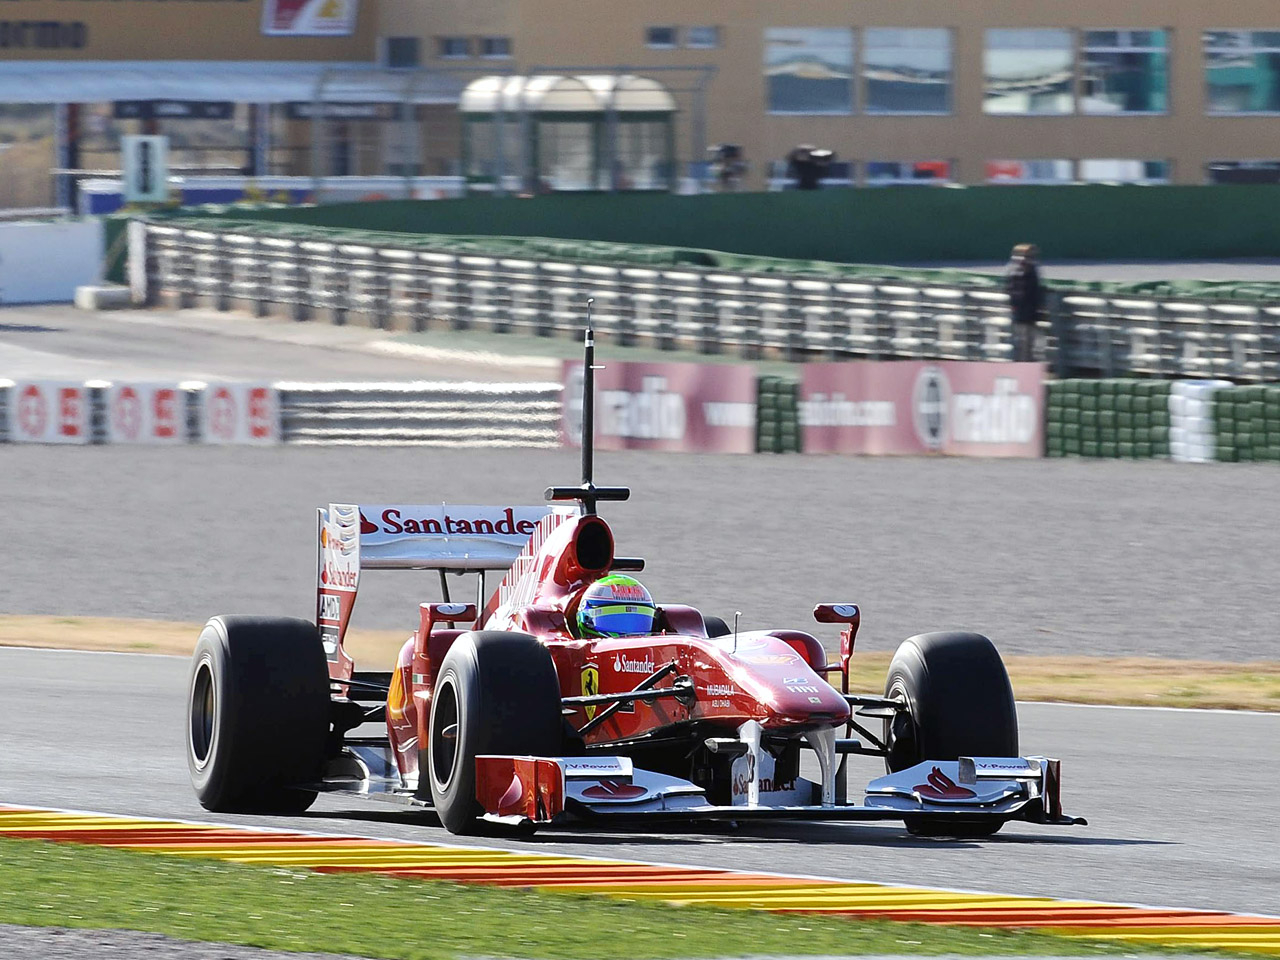 2010 Ferrari F10